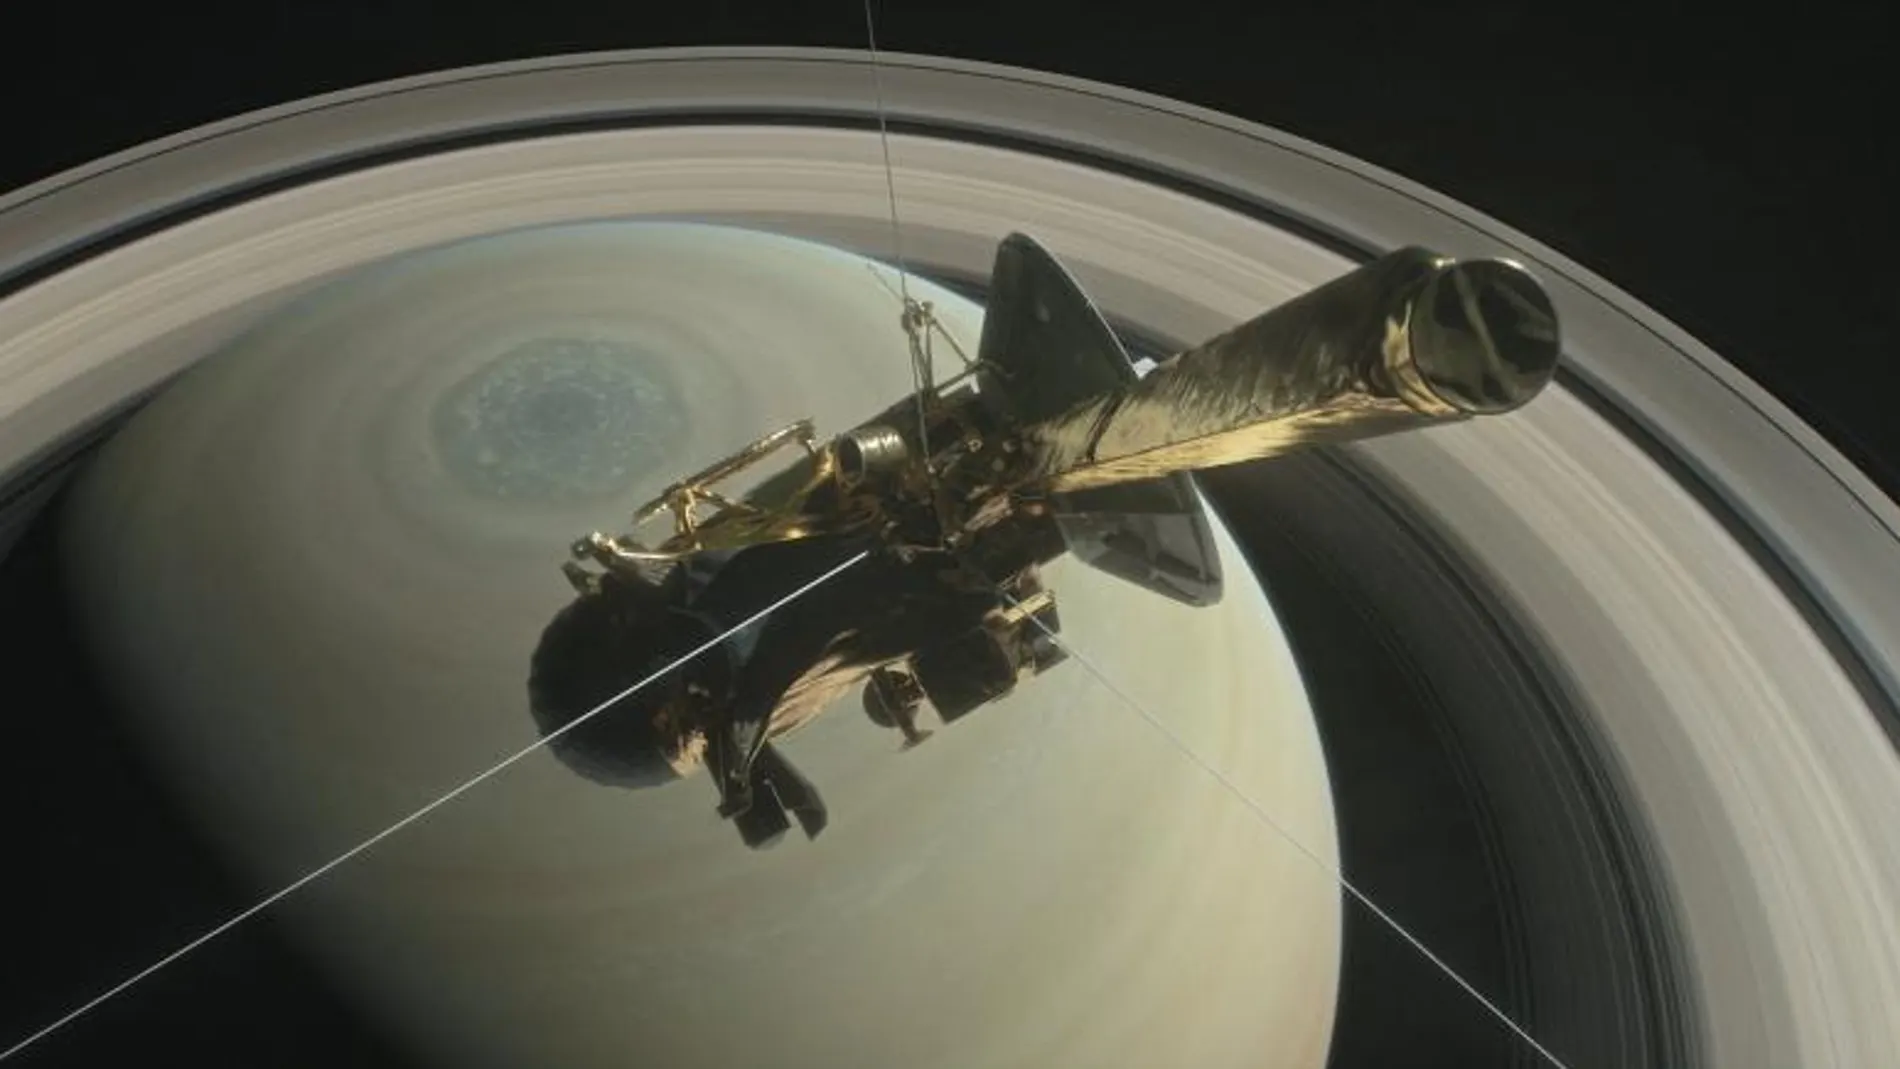 Ilustración cedida sin fechar de la NASA que muestra la nave Cassini que se dispone a adentrarse en la órbita del planeta Saturno y sus anillos interiores como parte final de su misión espacial, que se pretende ocurra el próximo 27 de abril